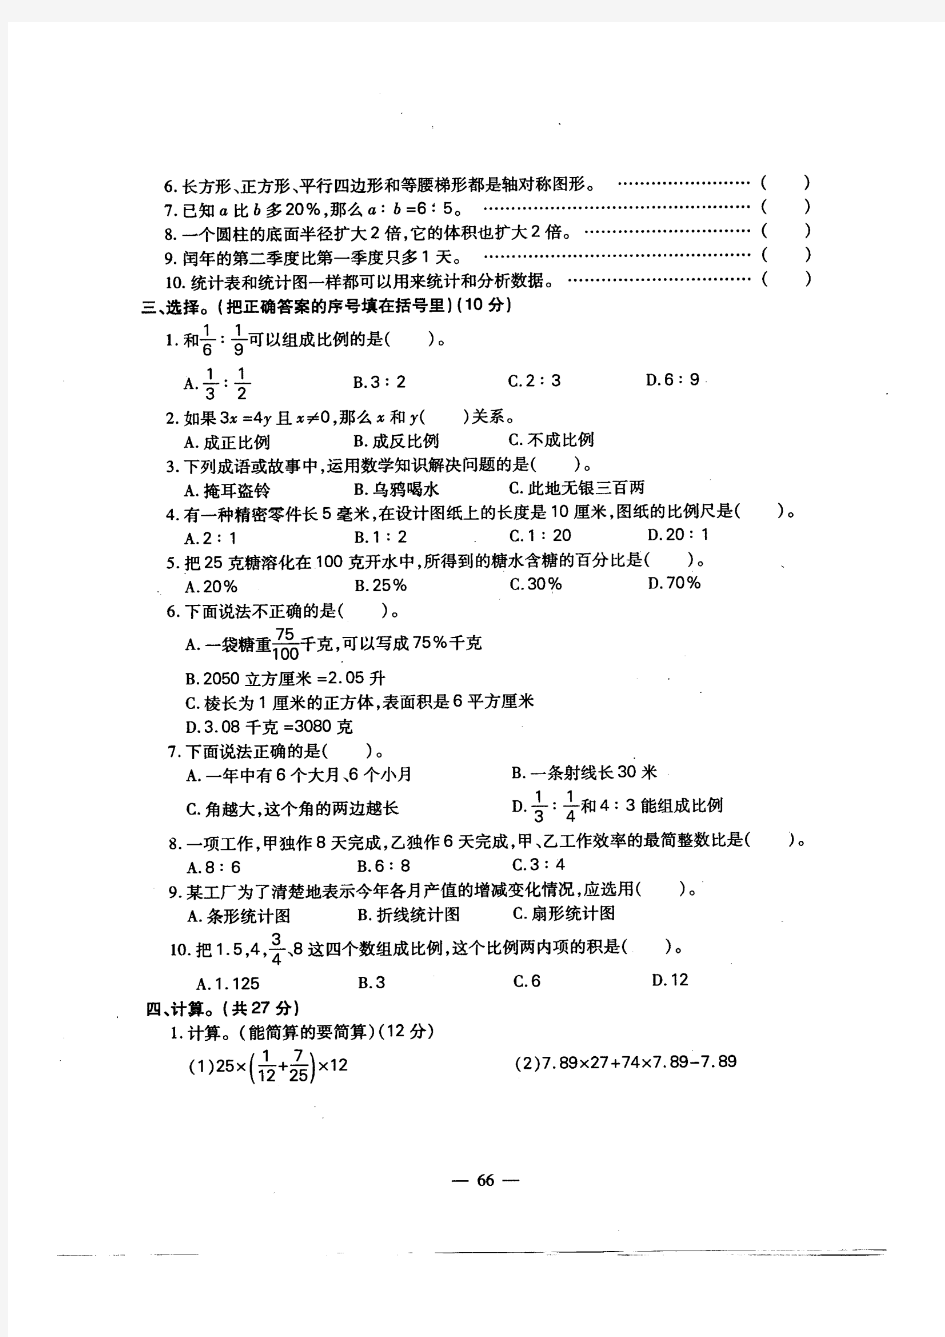 小学六年级数学毕业考考试卷(阆中市)